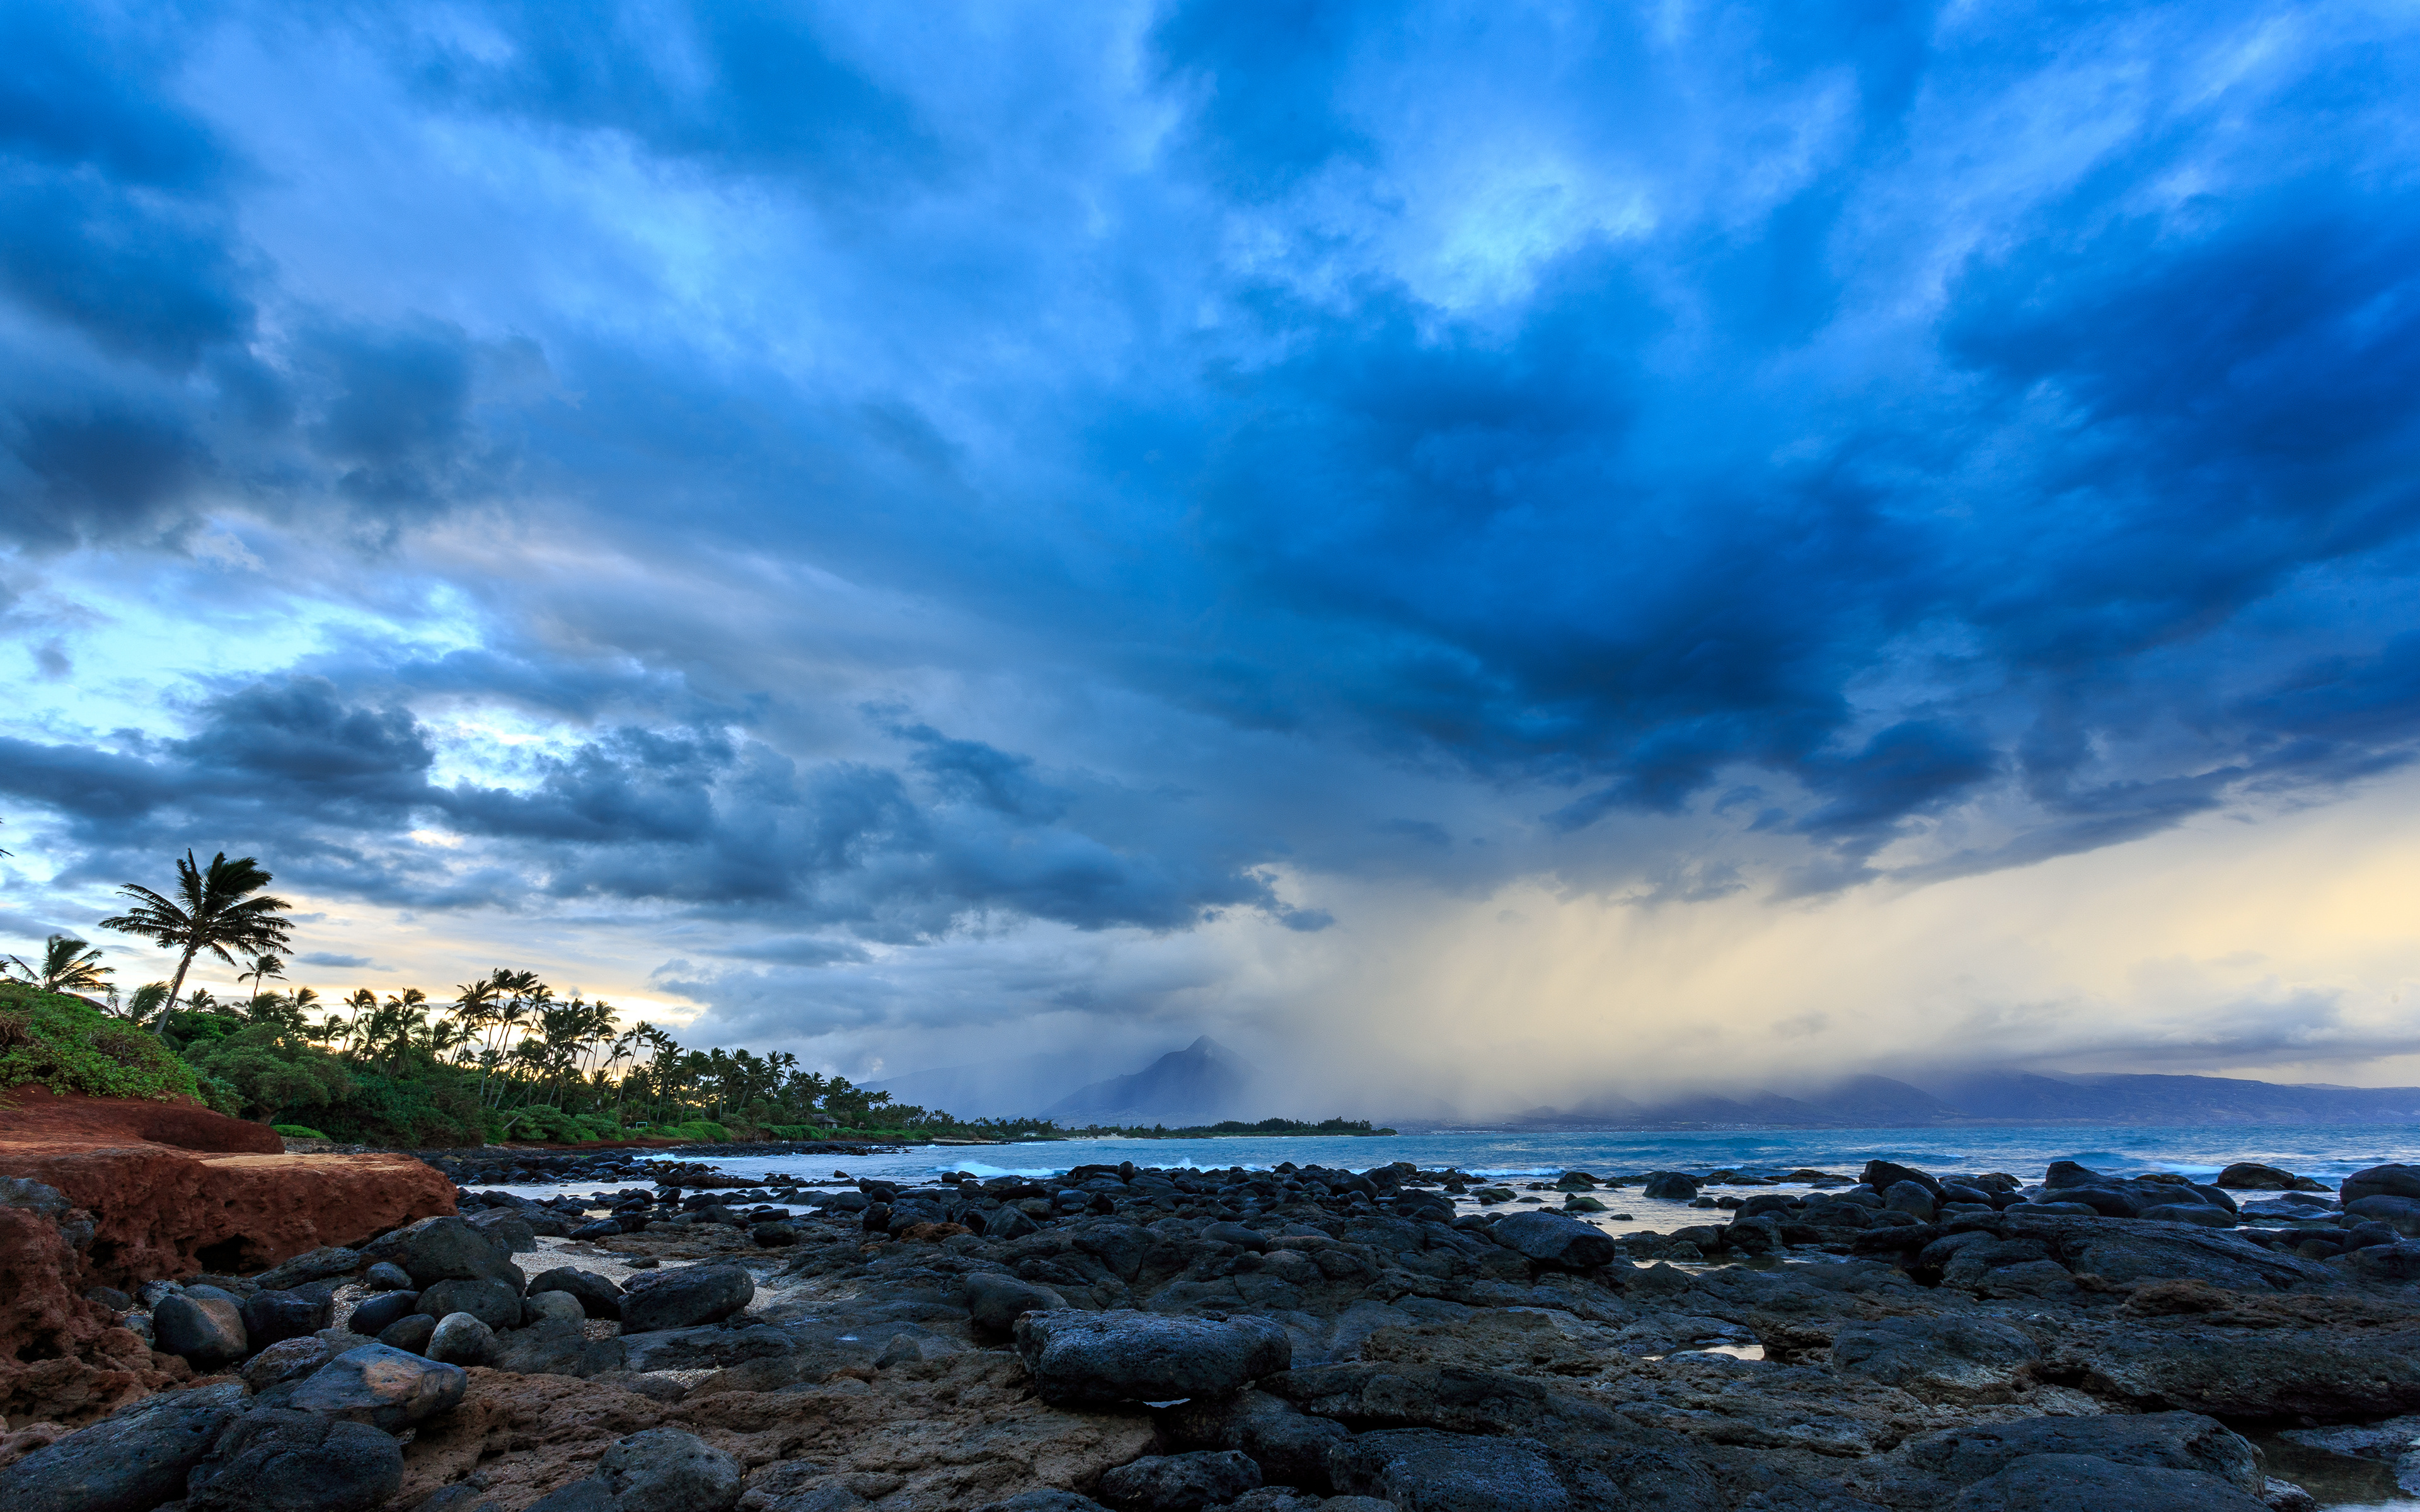 壁紙 3840x2400 空 朝焼けと日没 大洋 Kahului Hawaii Maui Pacific Ocean ハワイ 州 雷雲 雲 自然 ダウンロード 写真